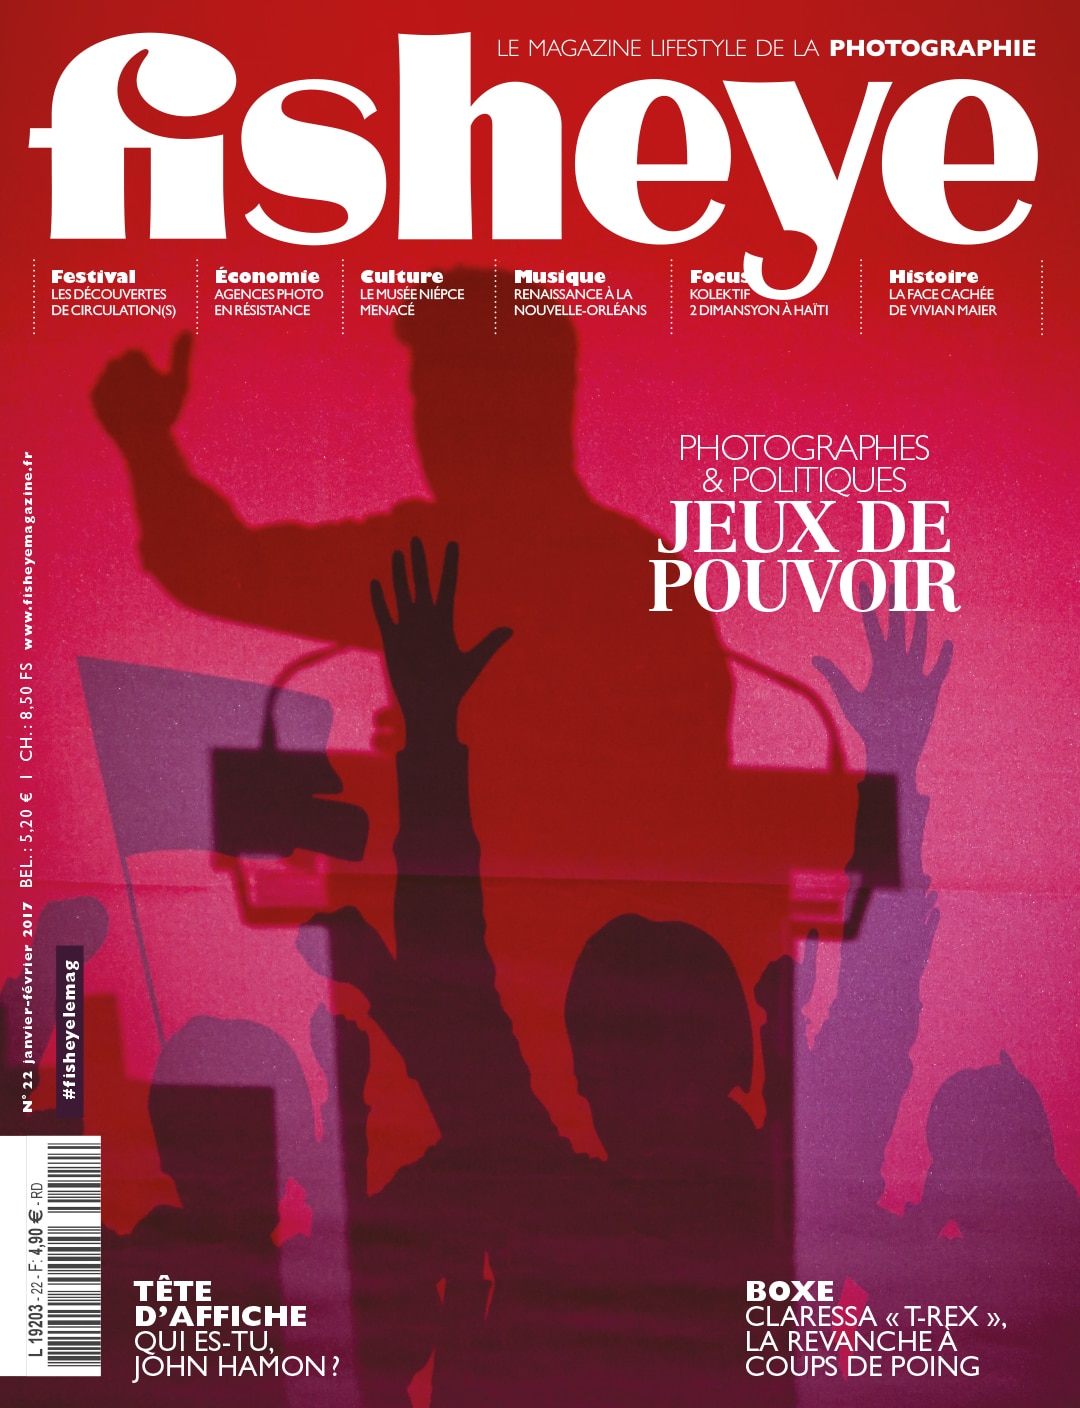 Fisheye Magazine #22 Photographes et politiques : Jeux de pouvoir